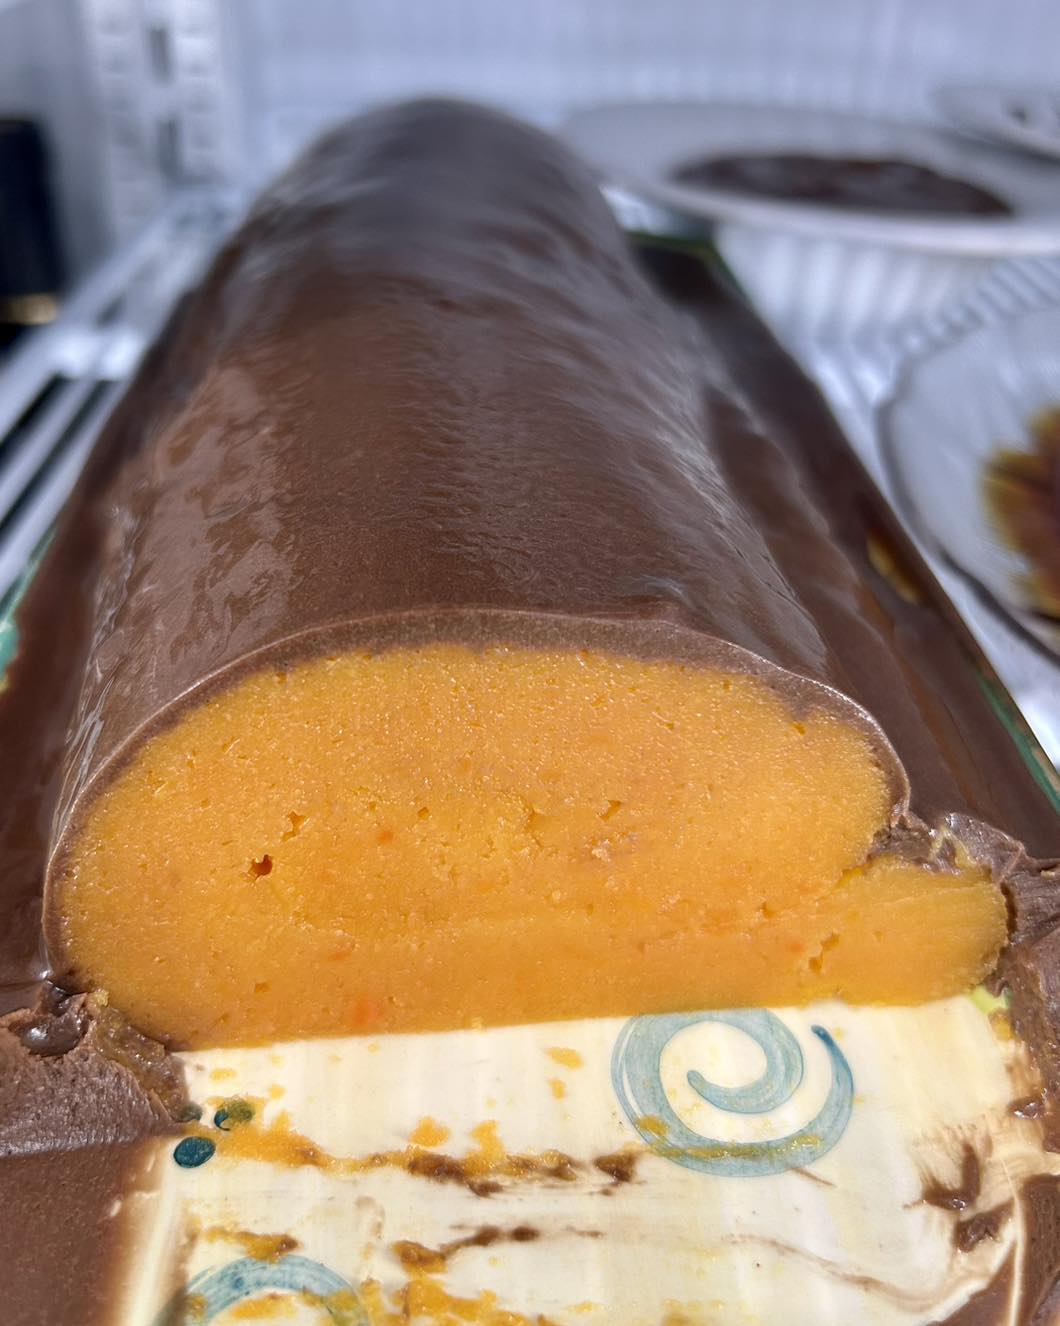 Dizem que esta é a melhor Torta de cenoura com cobertura de chocolate que ja provaram!